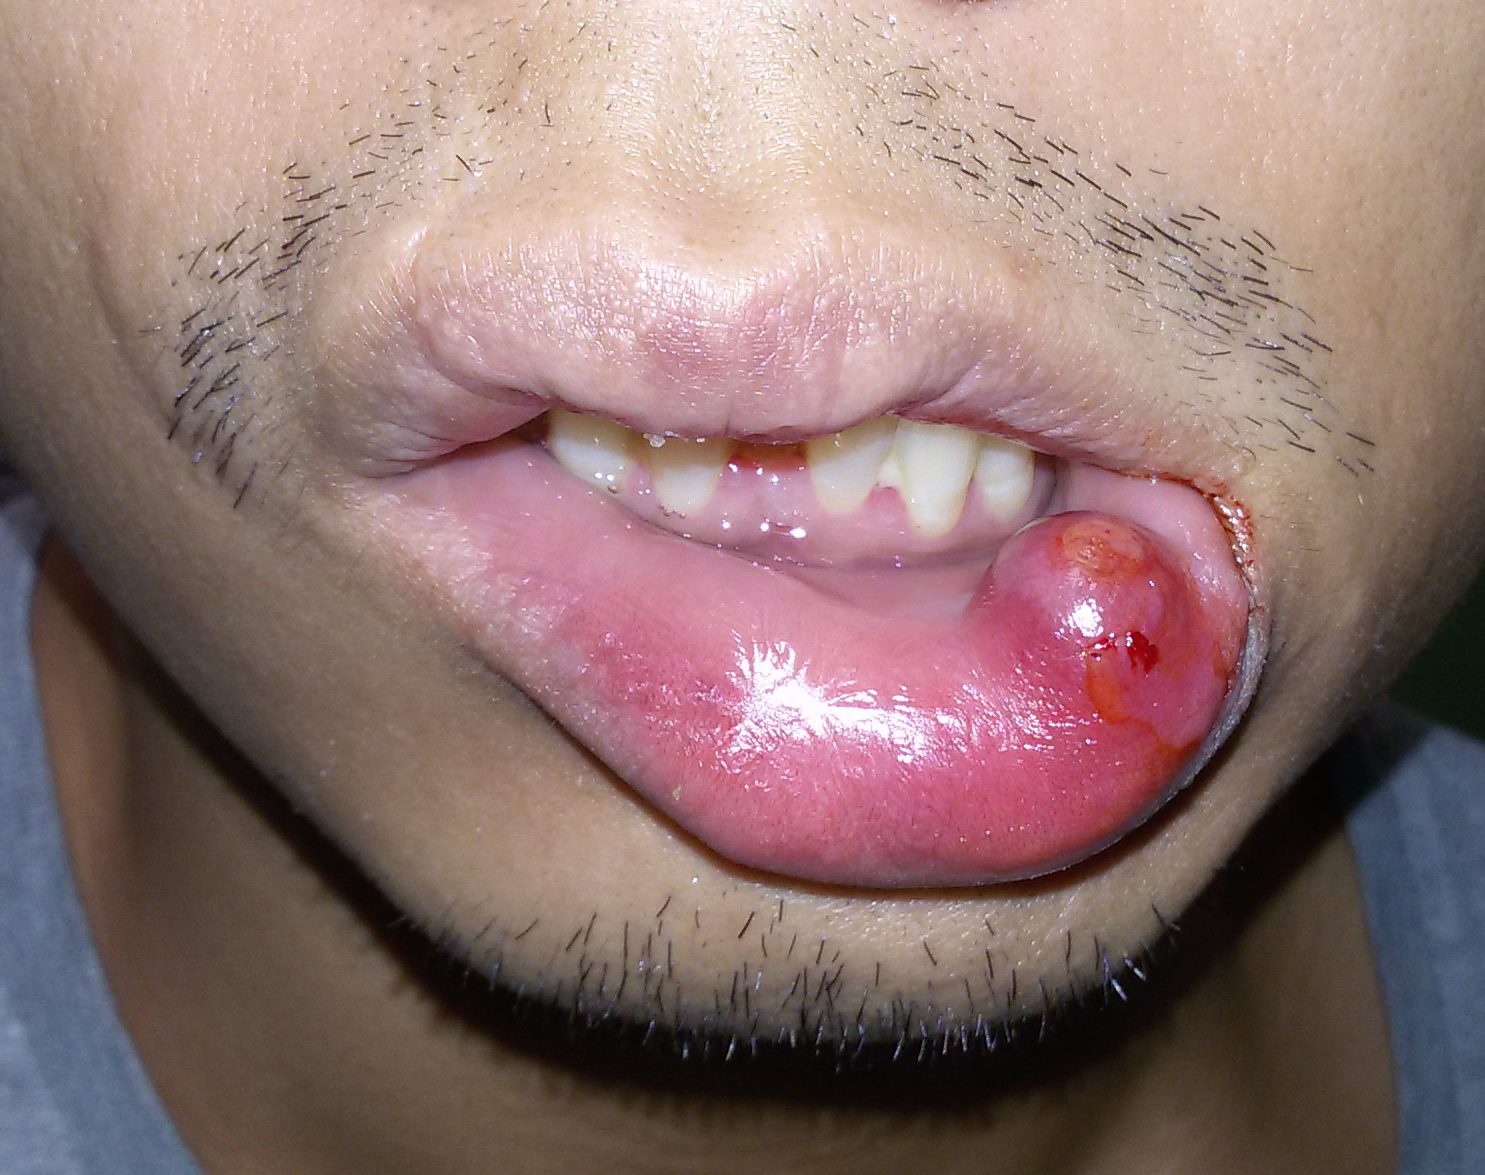 Le cisti da ritenzione delle ghiandole salivari minori (mucocele